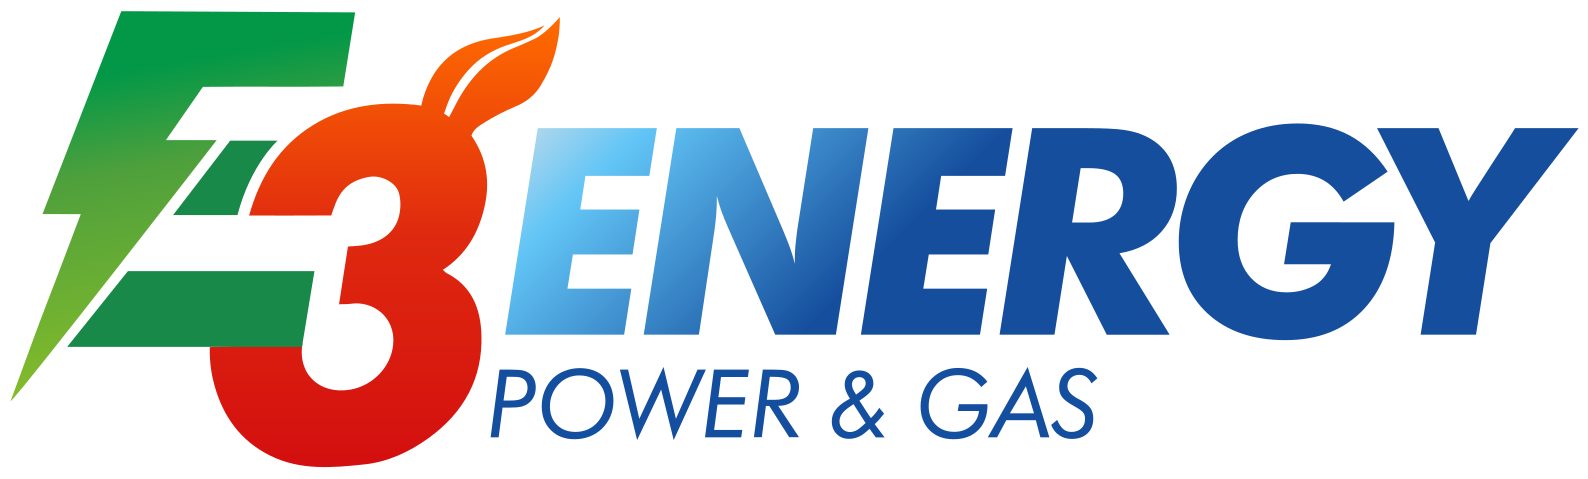 E3ENERGY POWER E GAS